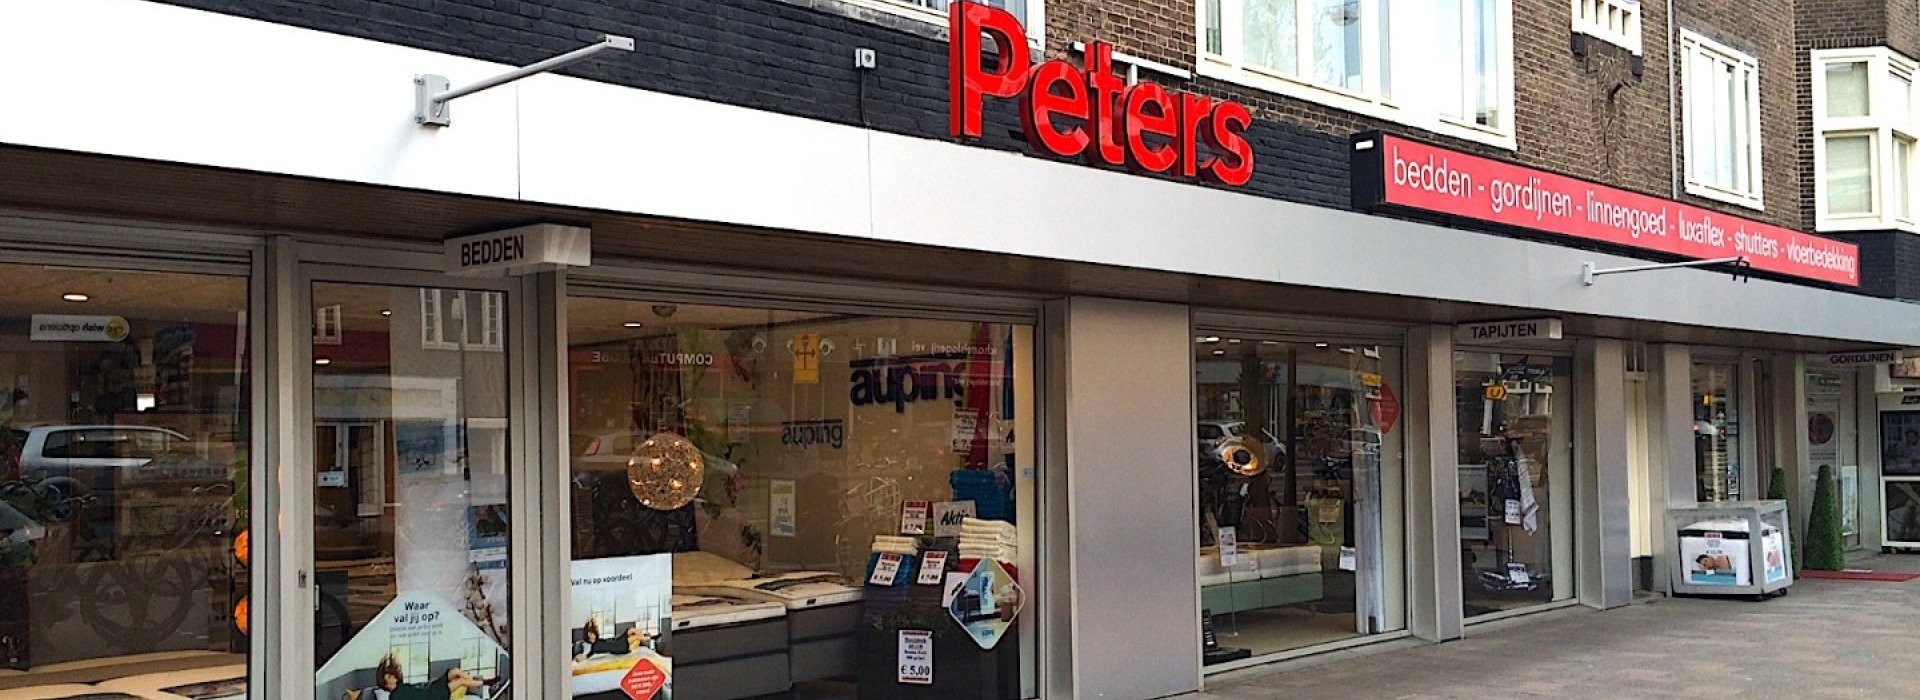 peters-Amsterdam-header-.jpg